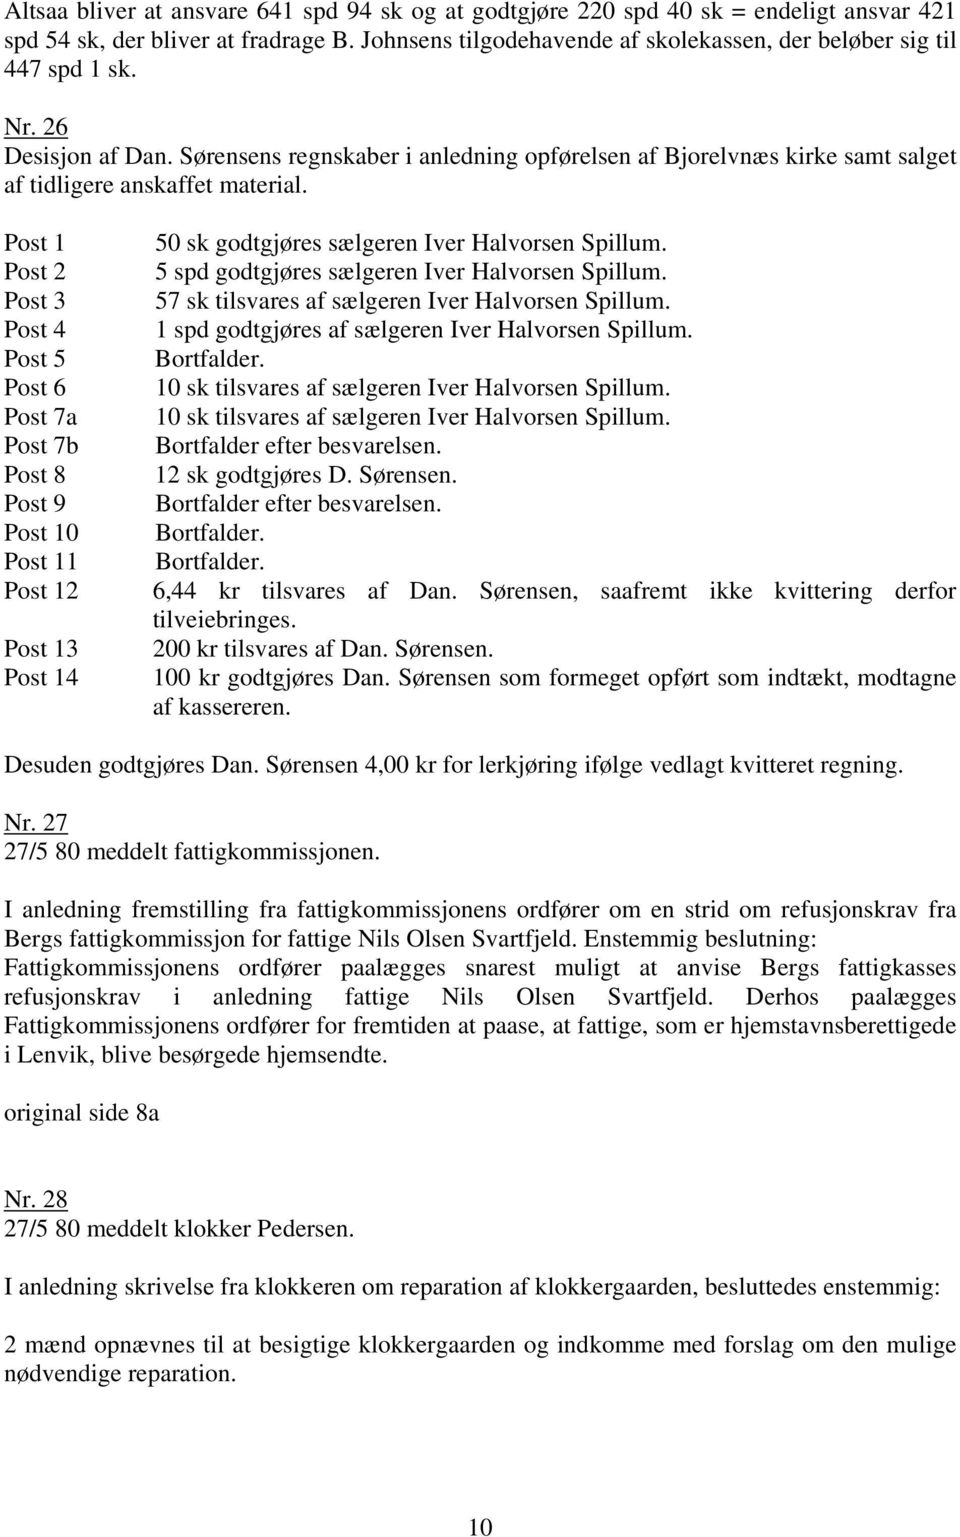 Sørensens regnskaber i anledning opførelsen af Bjorelvnæs kirke samt salget af tidligere anskaffet material.